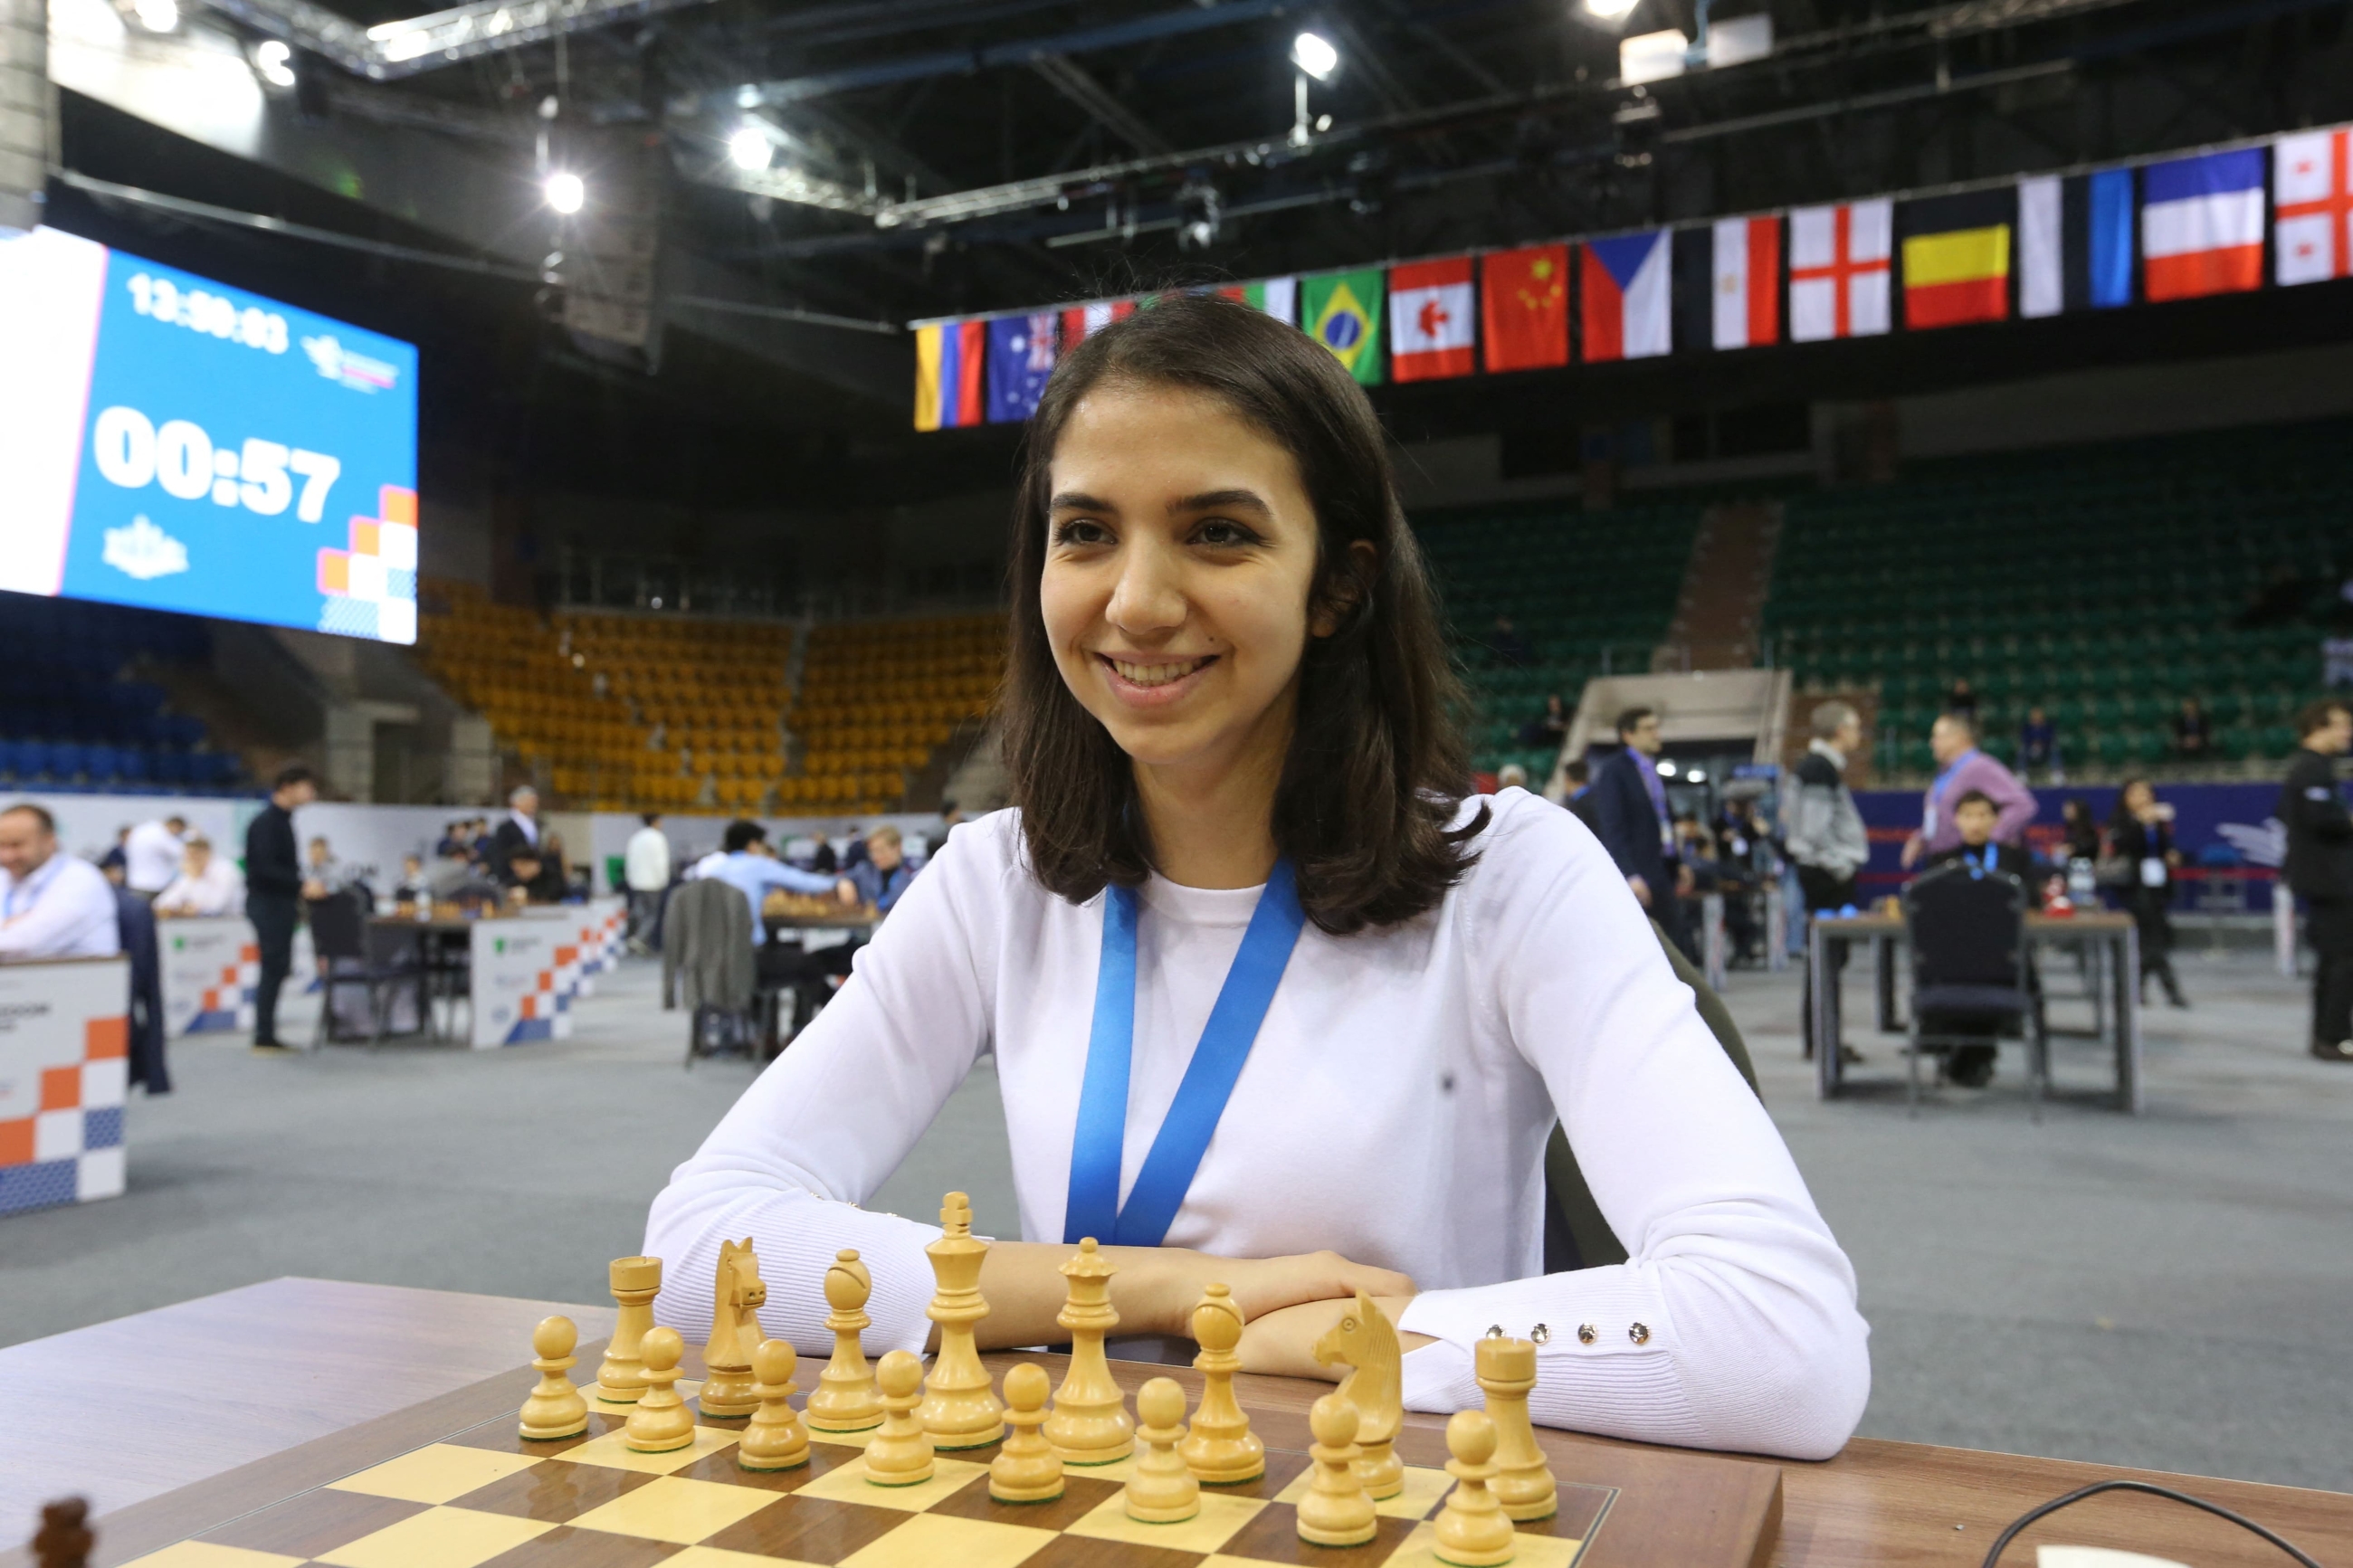 2022 U.S. Chess & Women's Chess Championship - Day 13 Recap